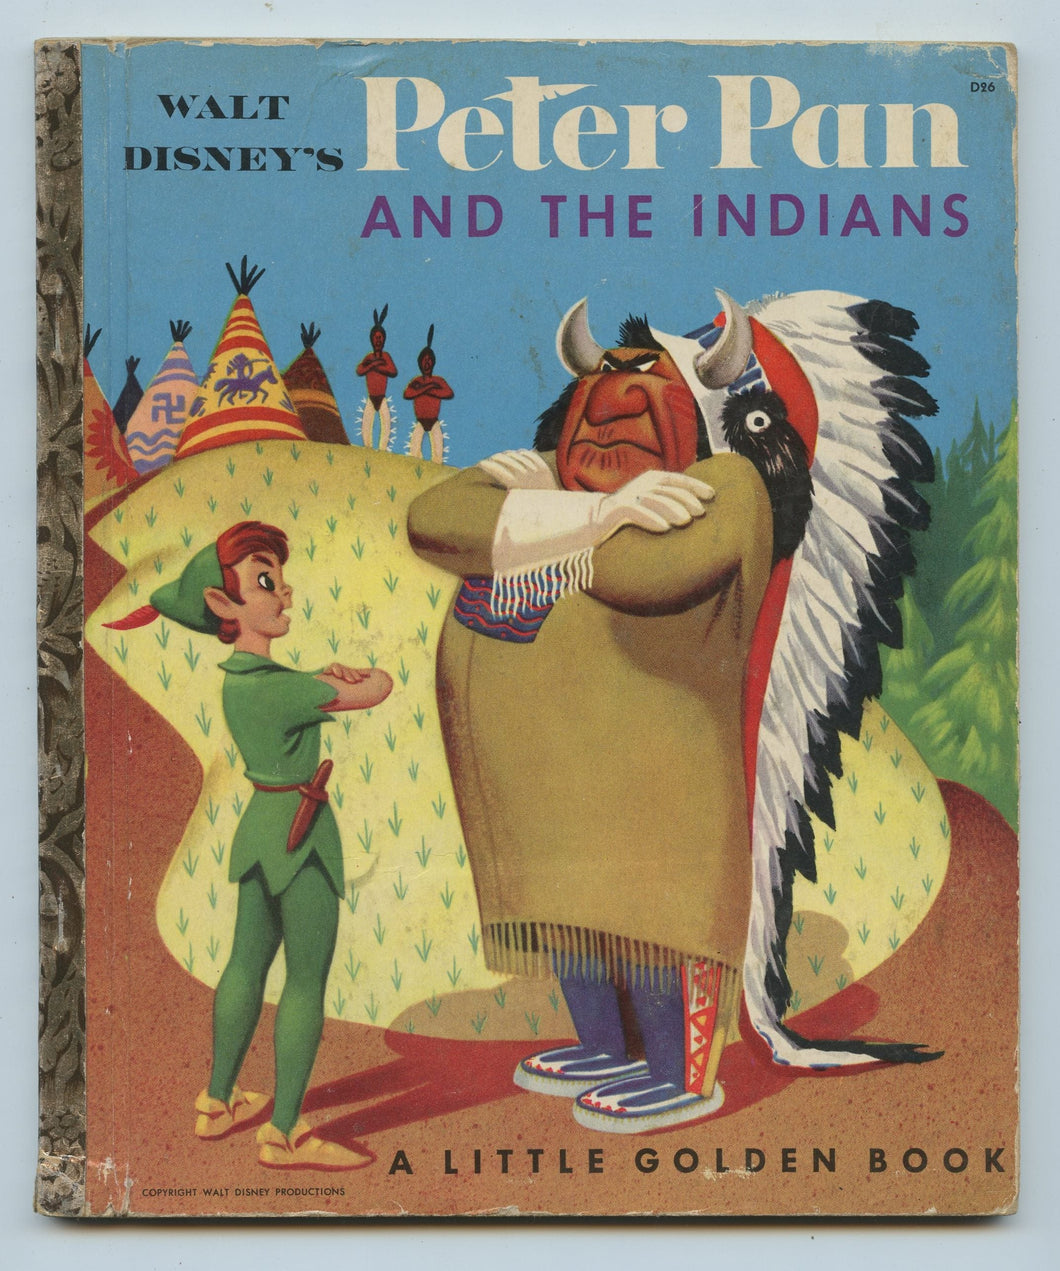 Walt Disney's Peter Pan and the Indians